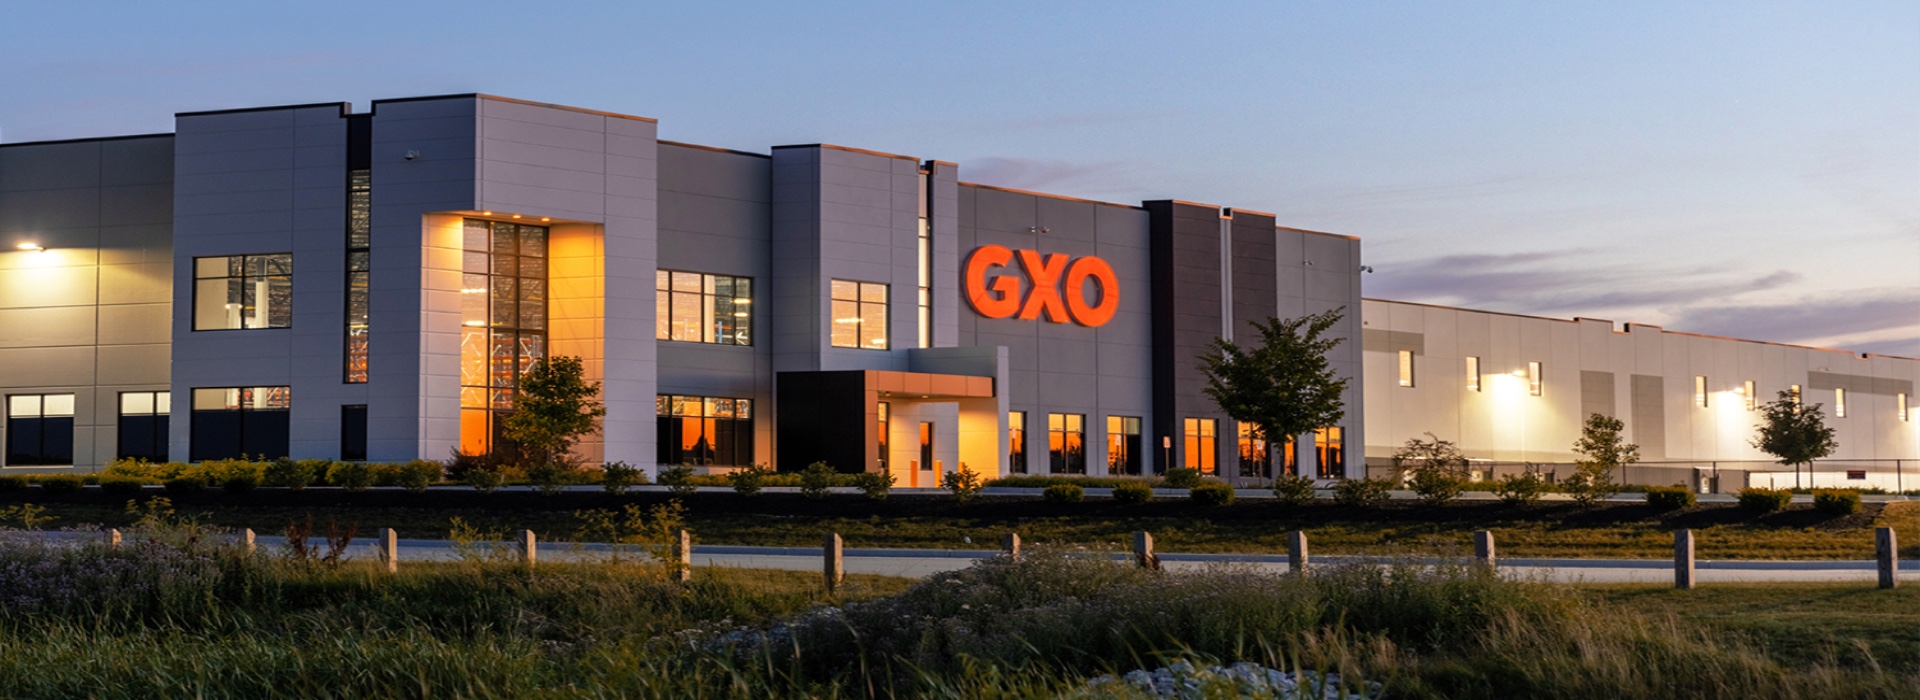 Frode fiscale, sequestro di 83,9 milioni: coinvolta la filiale italiana di GXO Logistics